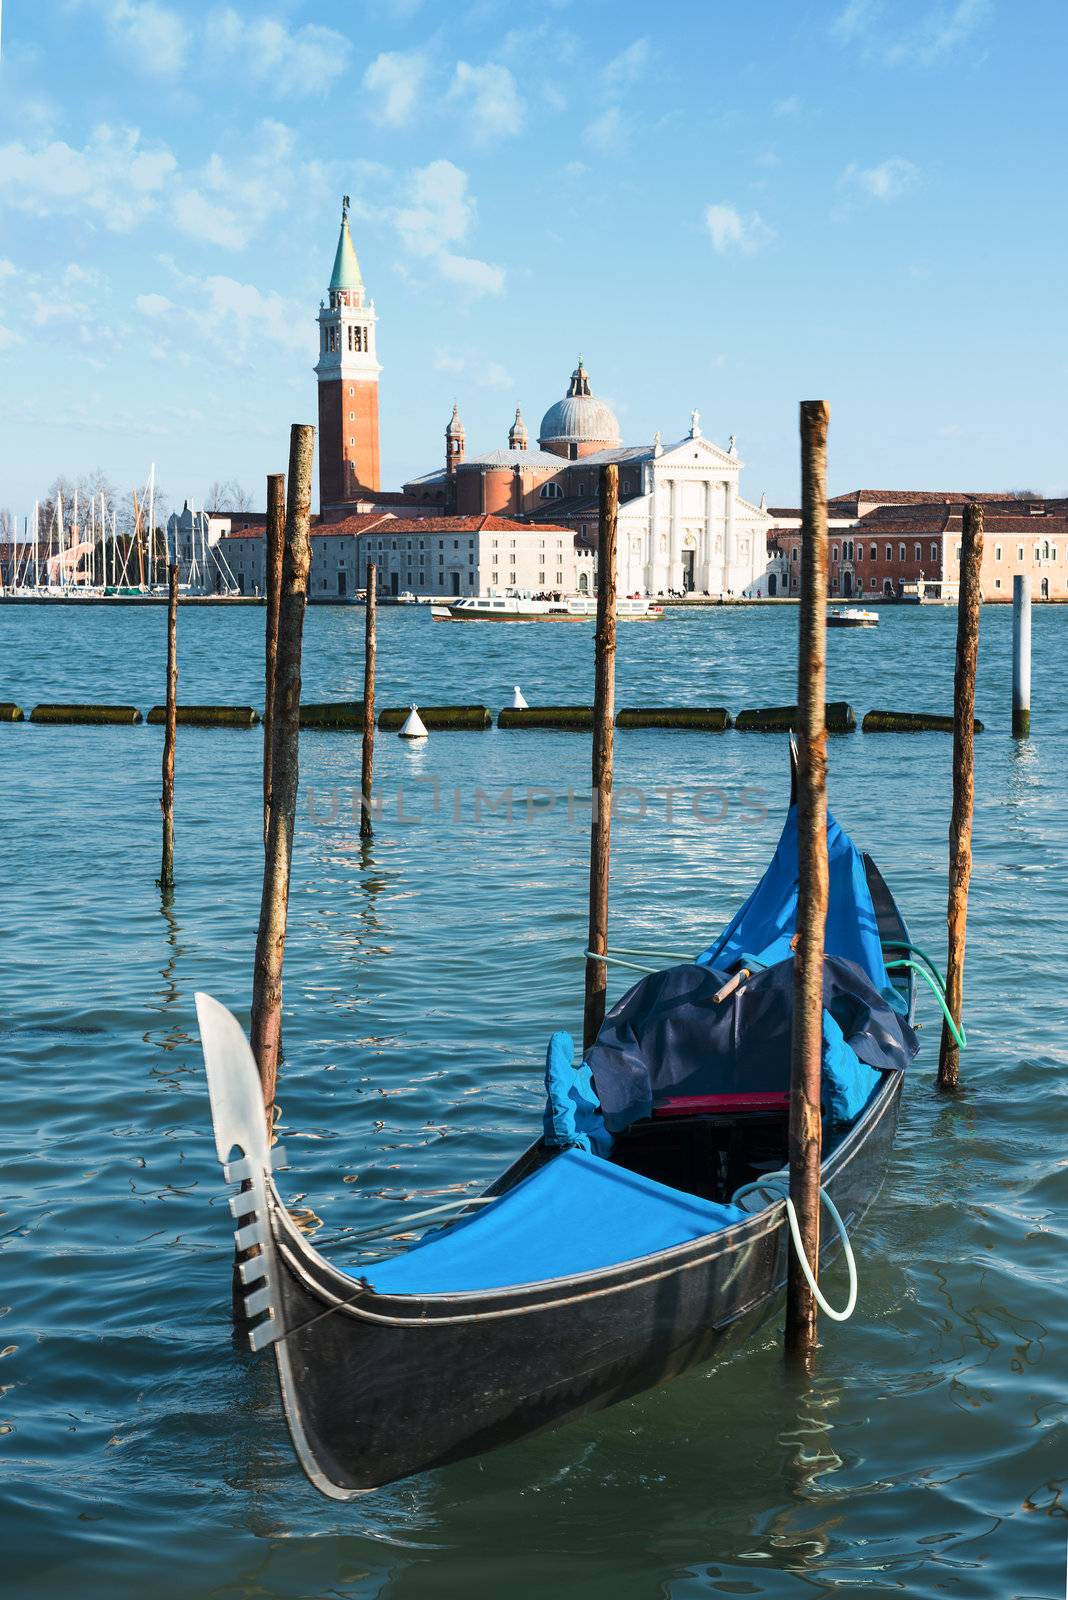 Gondolas moored by Saint Mark square with San Giorgio di Maggiore church in the background - Venice, Venezia, Italy, Europe 